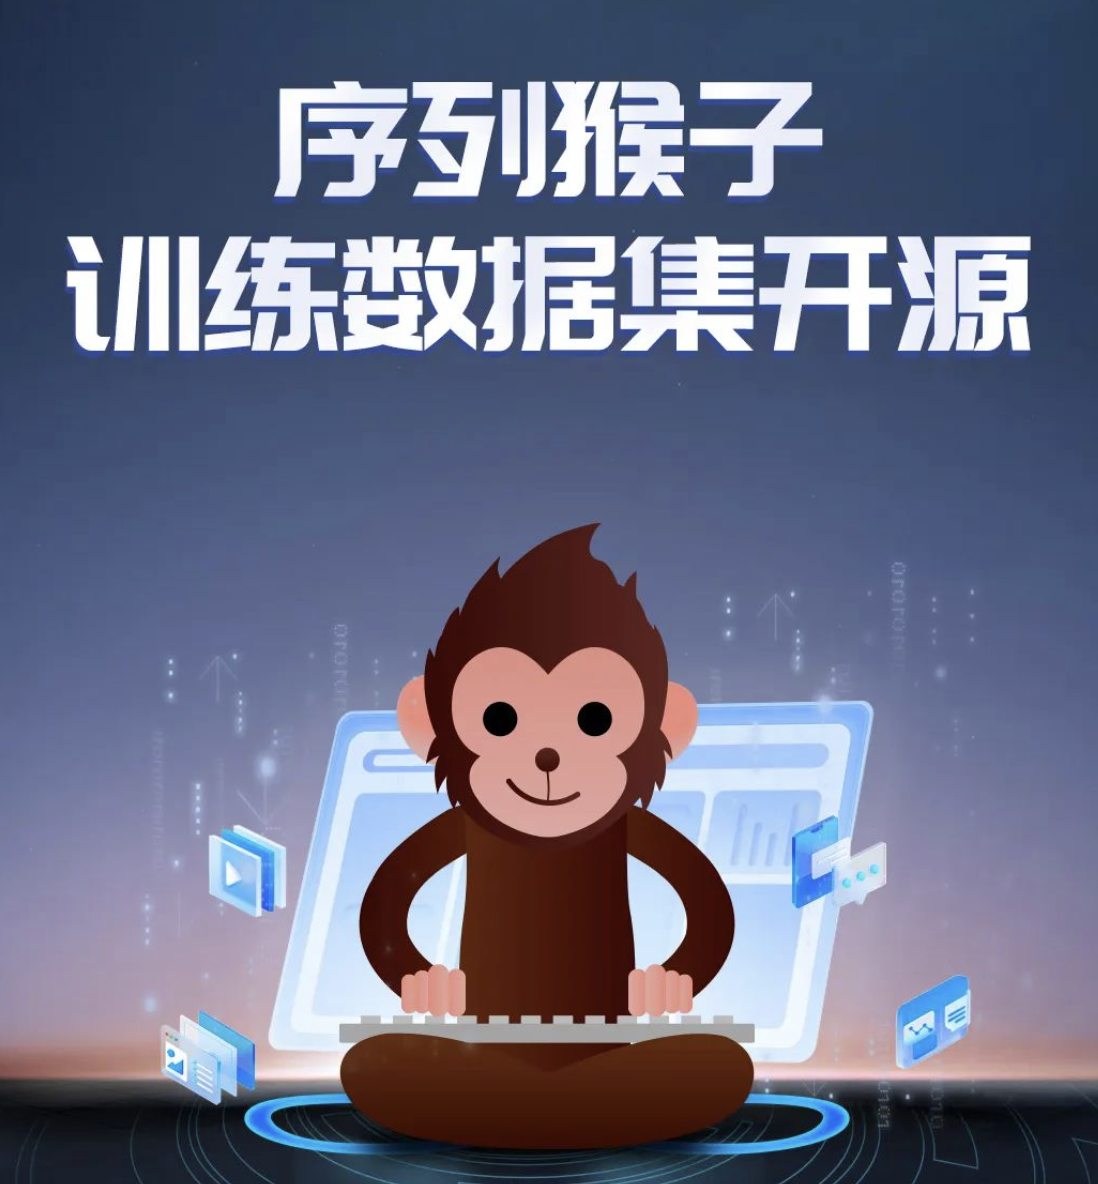 出门问问发布“序列猴子开源数据集1.0”